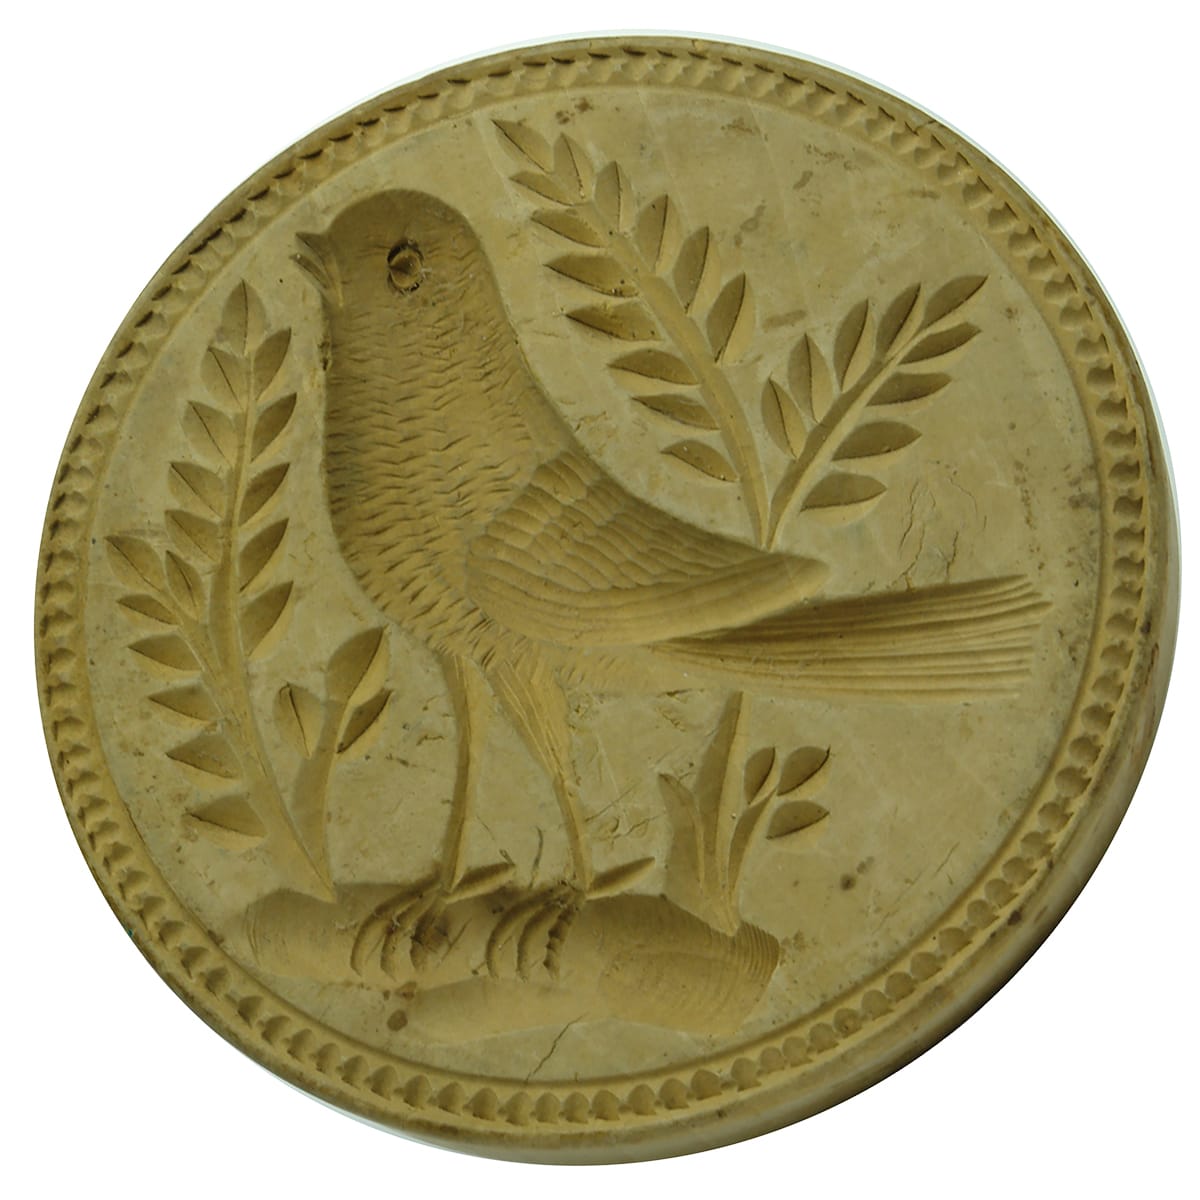 Round wooden Butter stamp: Bird (Robin?)